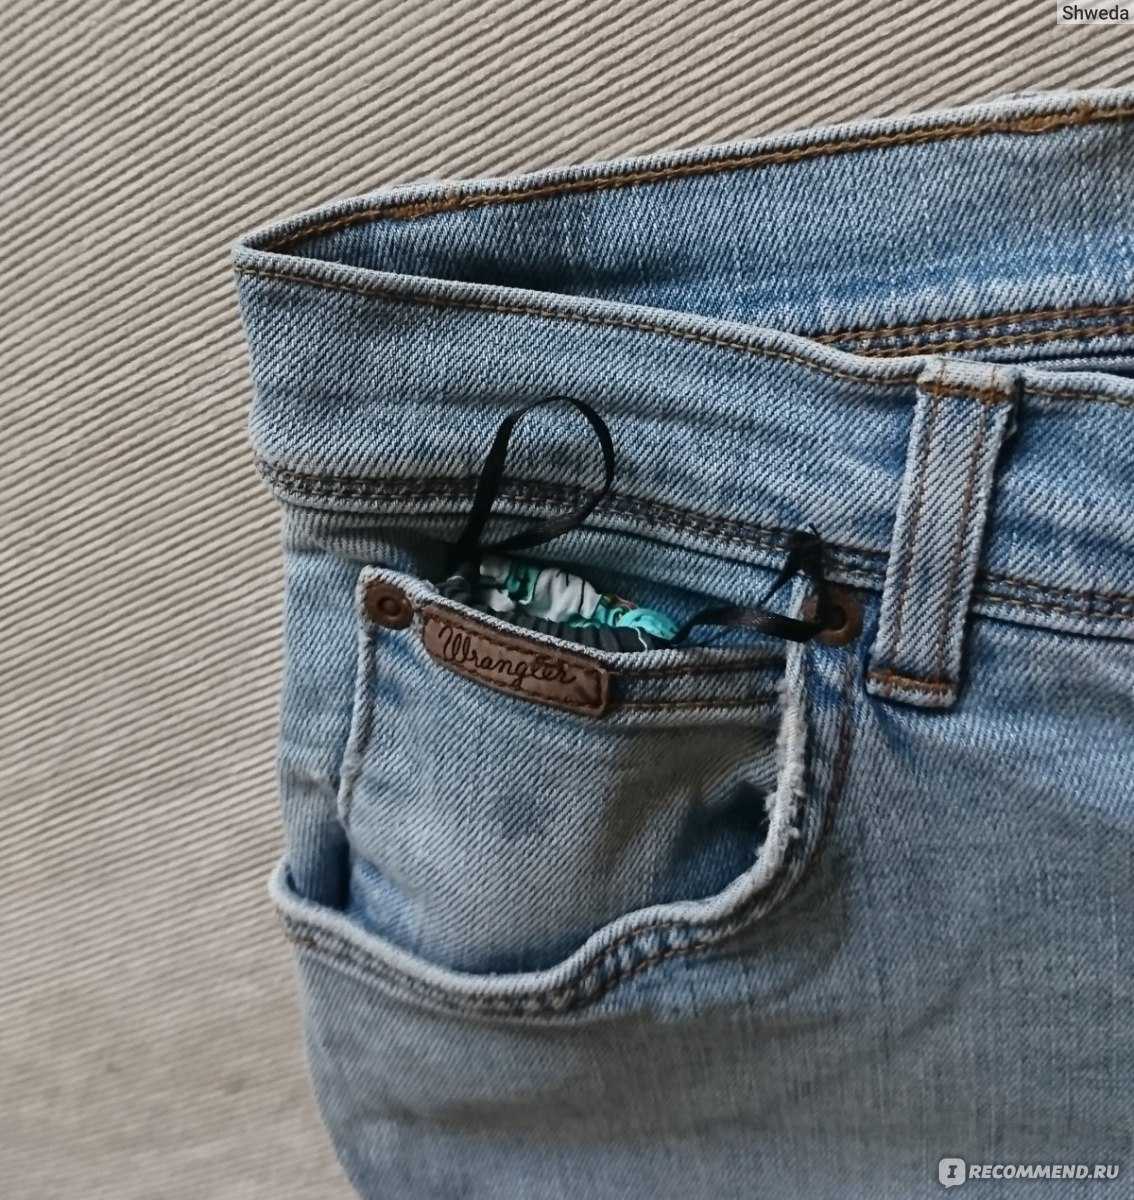 Зачем нужен крошечный карман на джинсах - название и использование, варианты кроя с фото